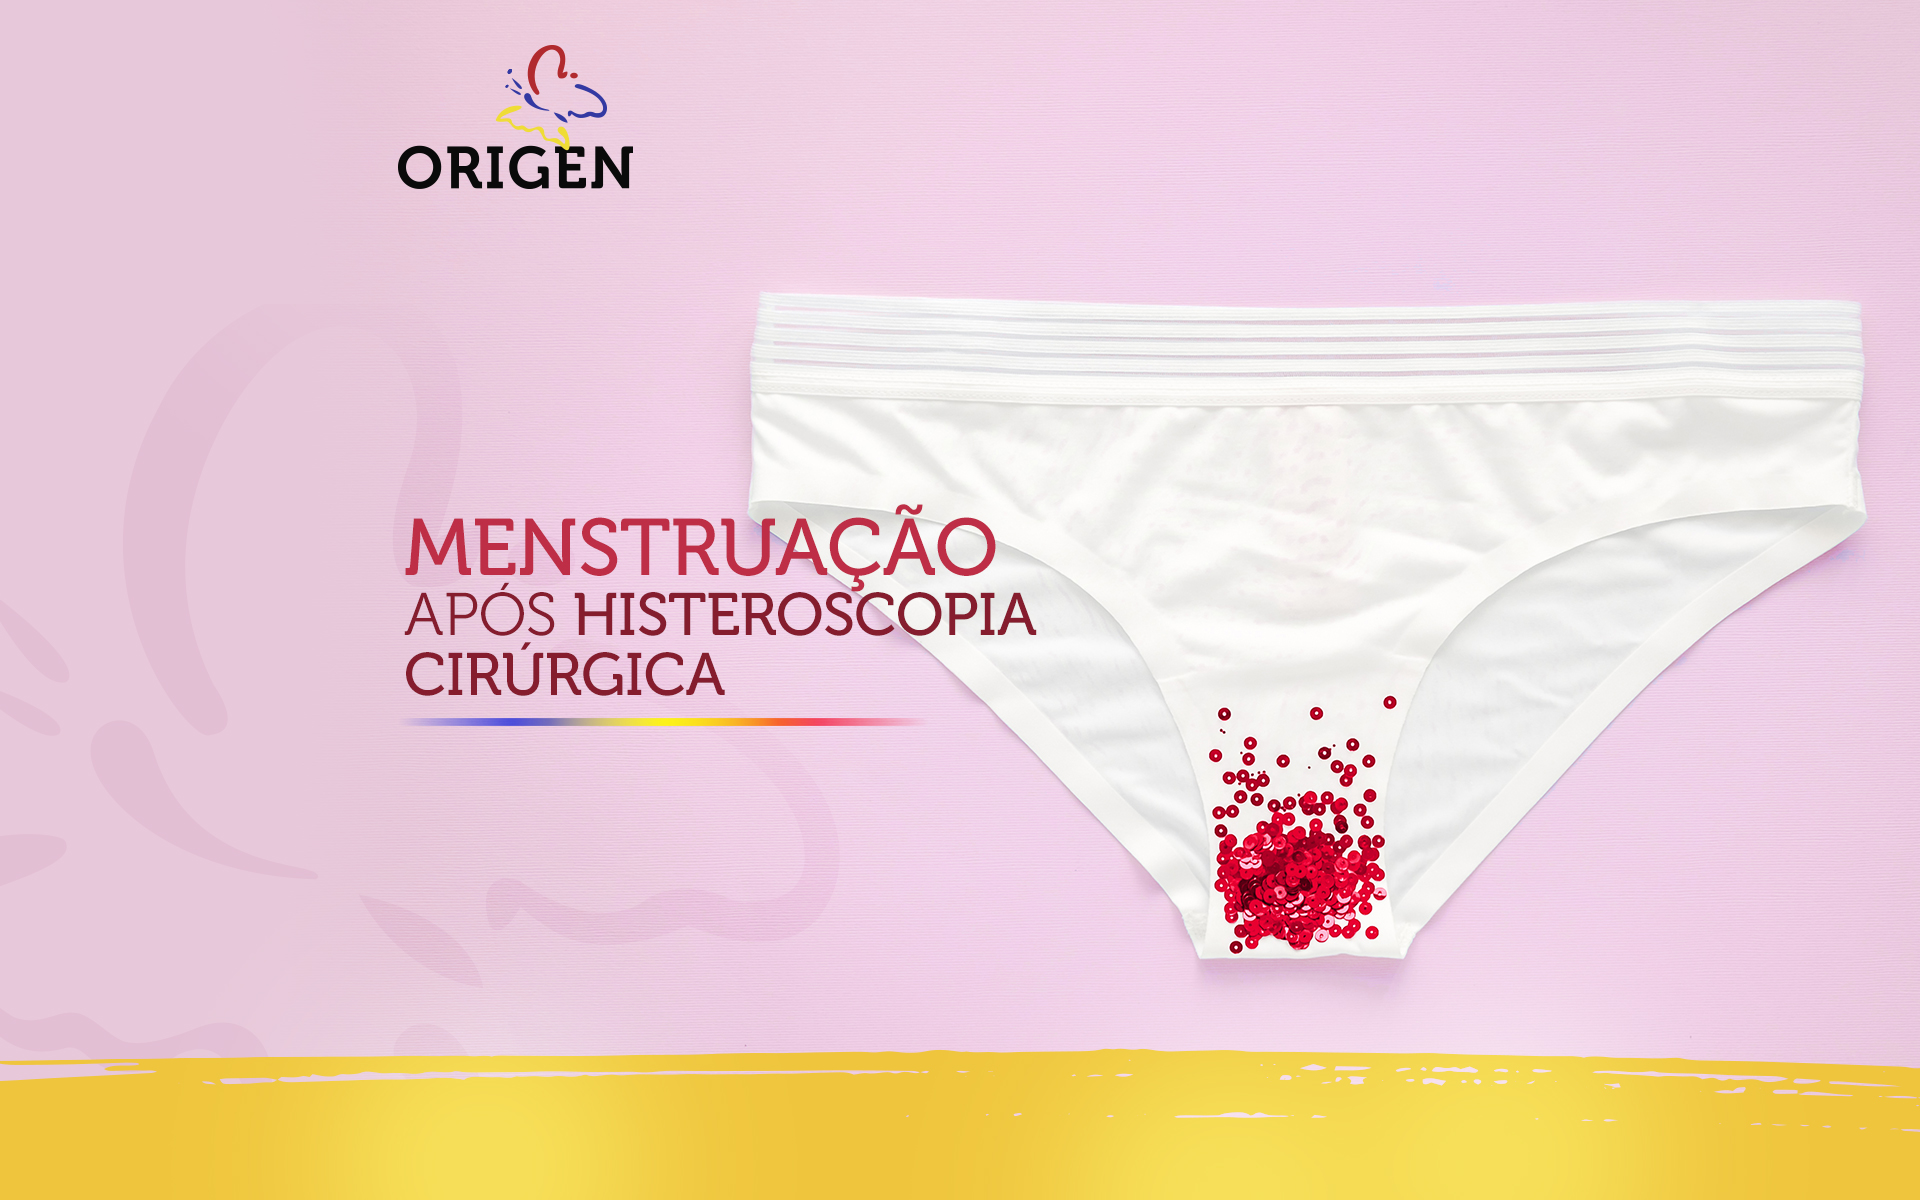 Menstruação após histeroscopia cirúrgica